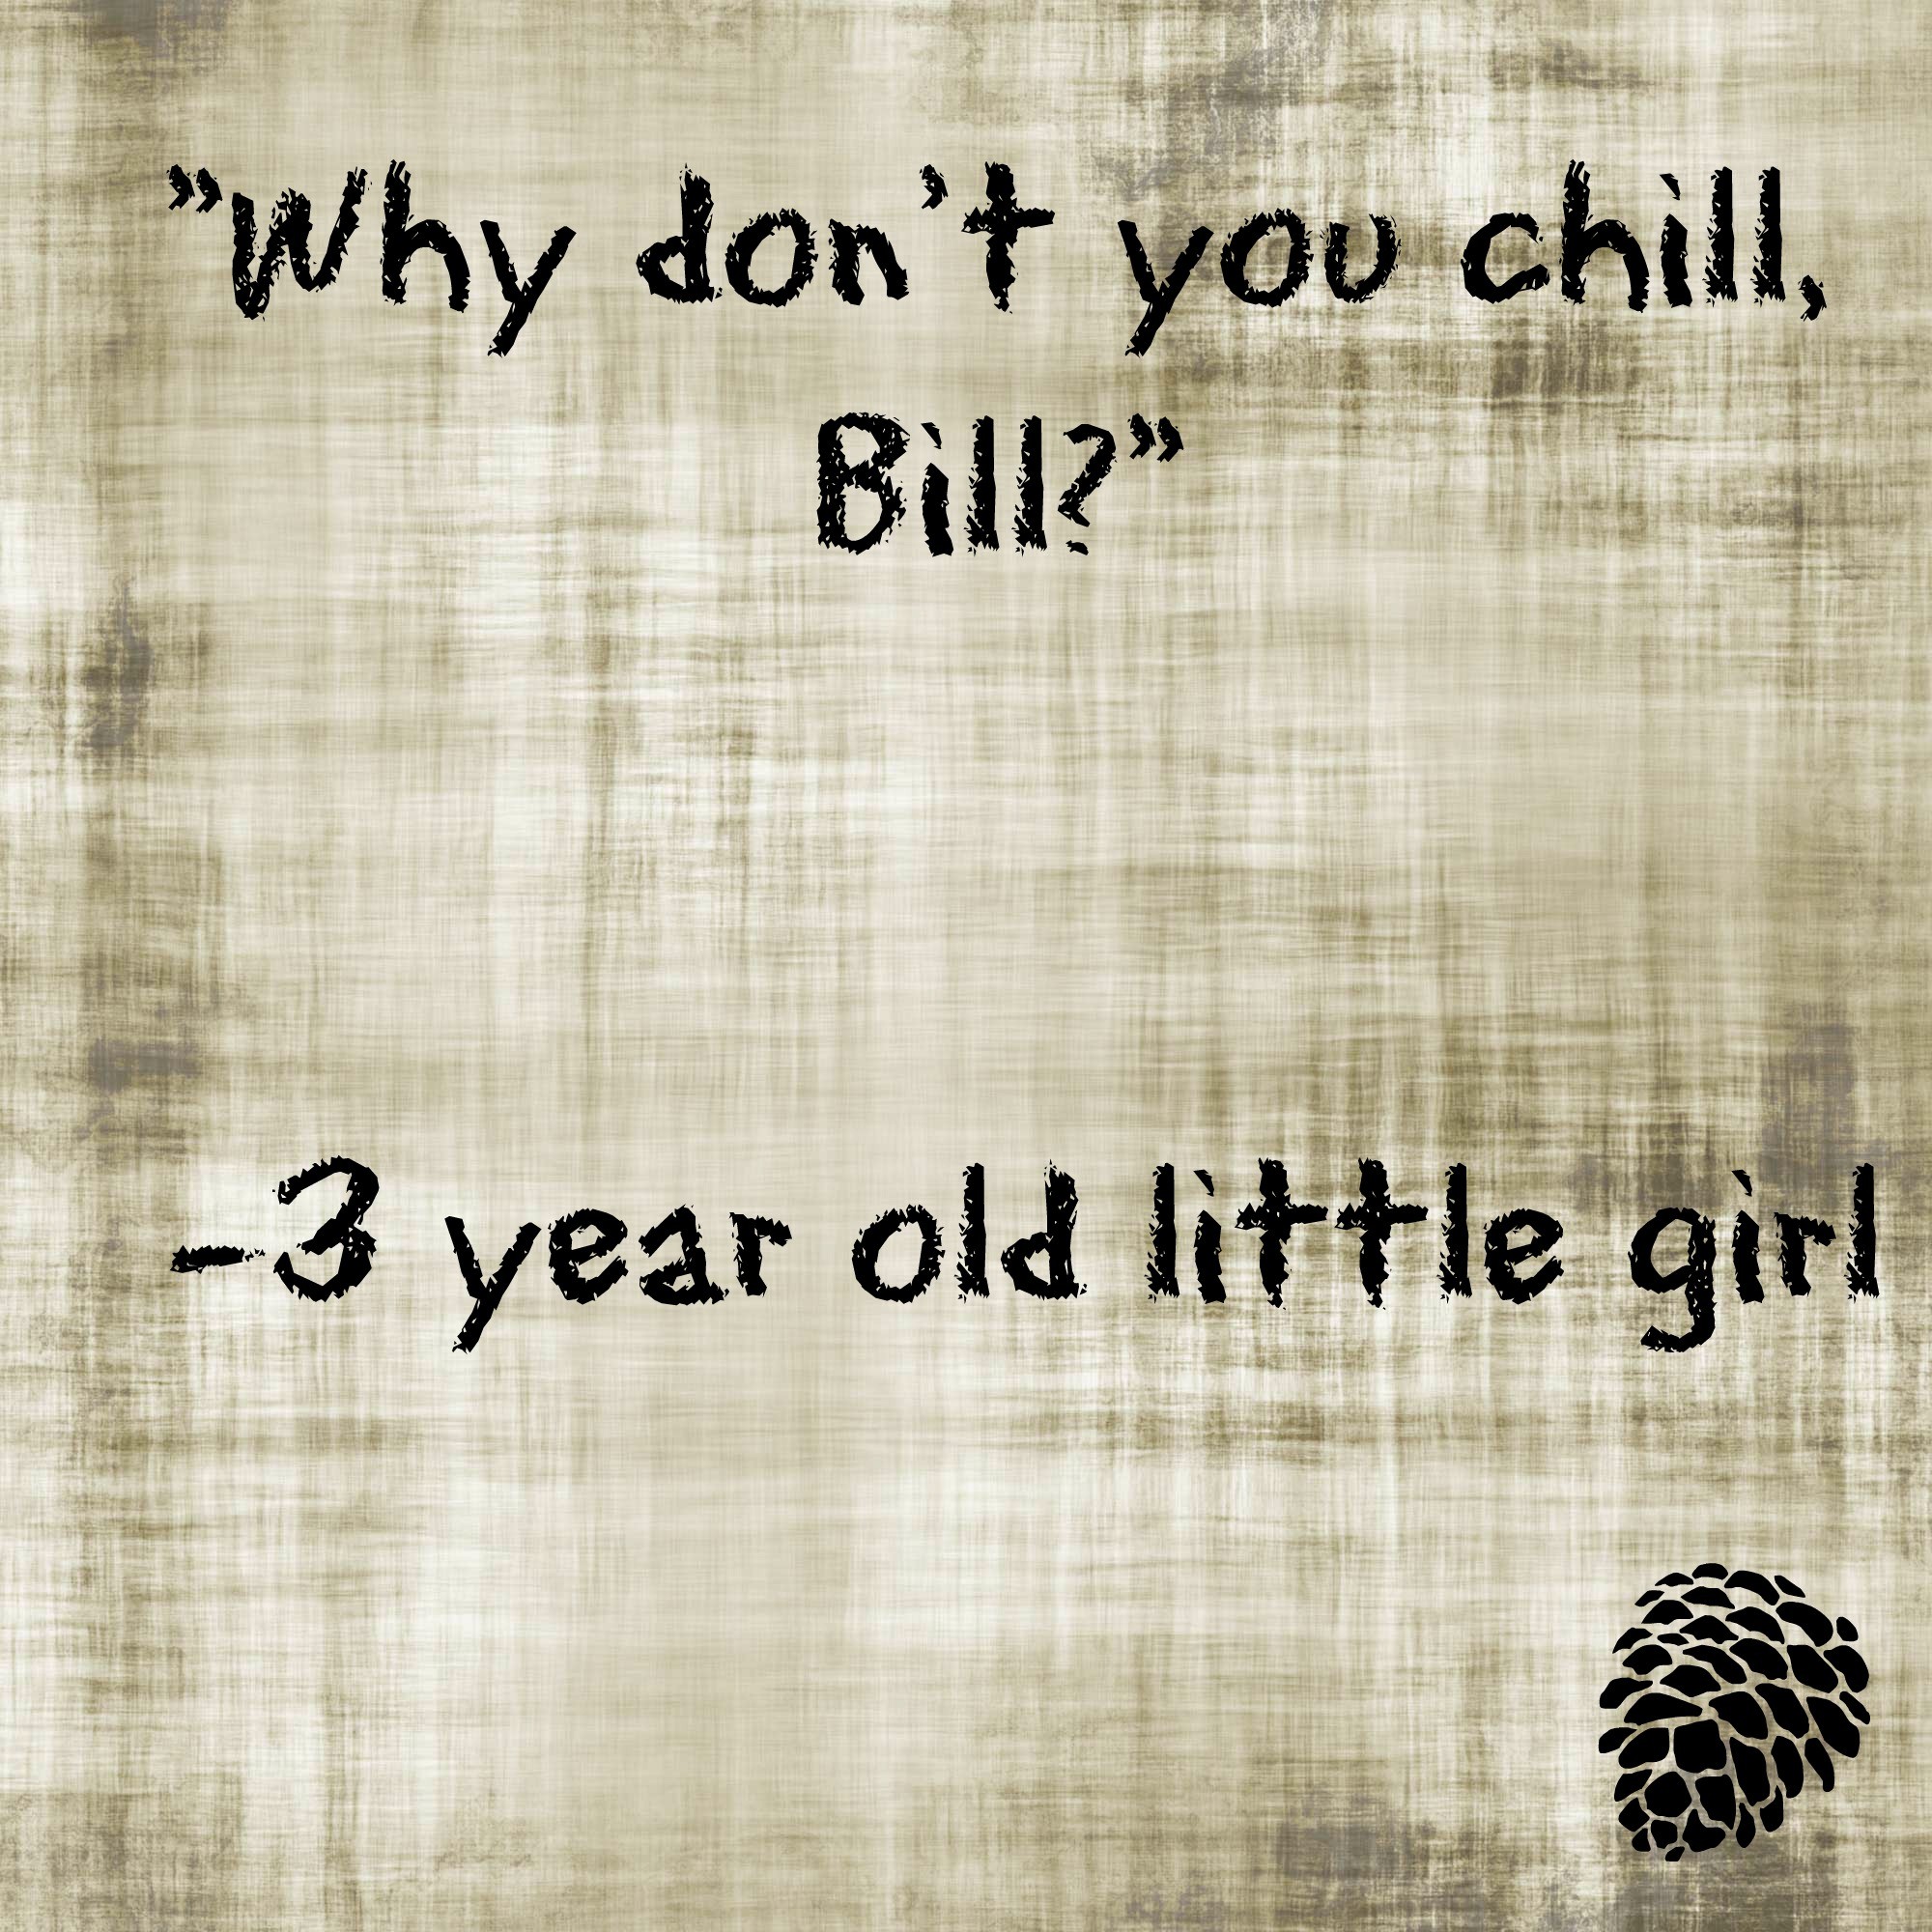 Chill, Bill